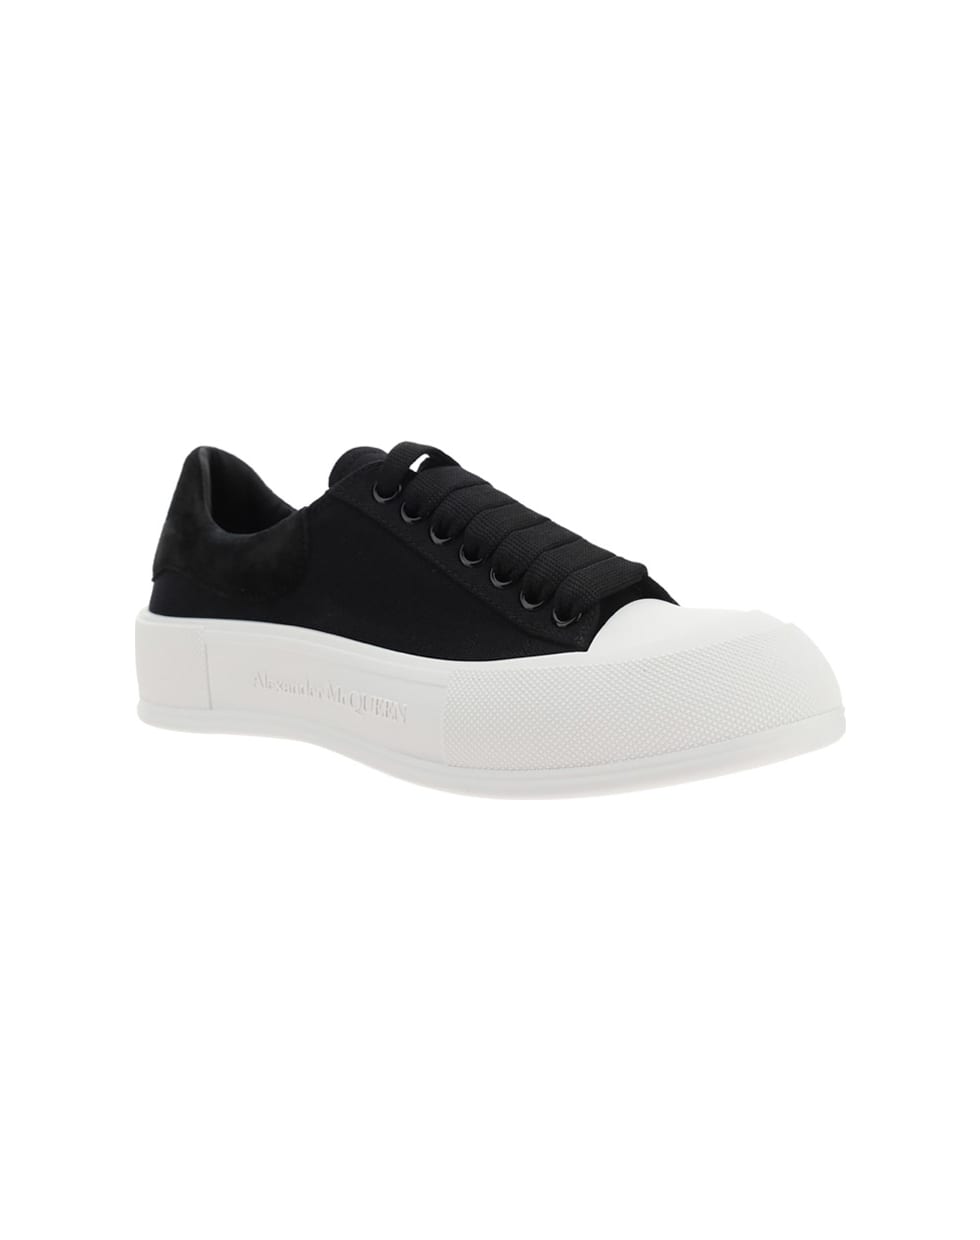 Alexander McQueen Alexander Mc Queen Sneakers - Black/black/white